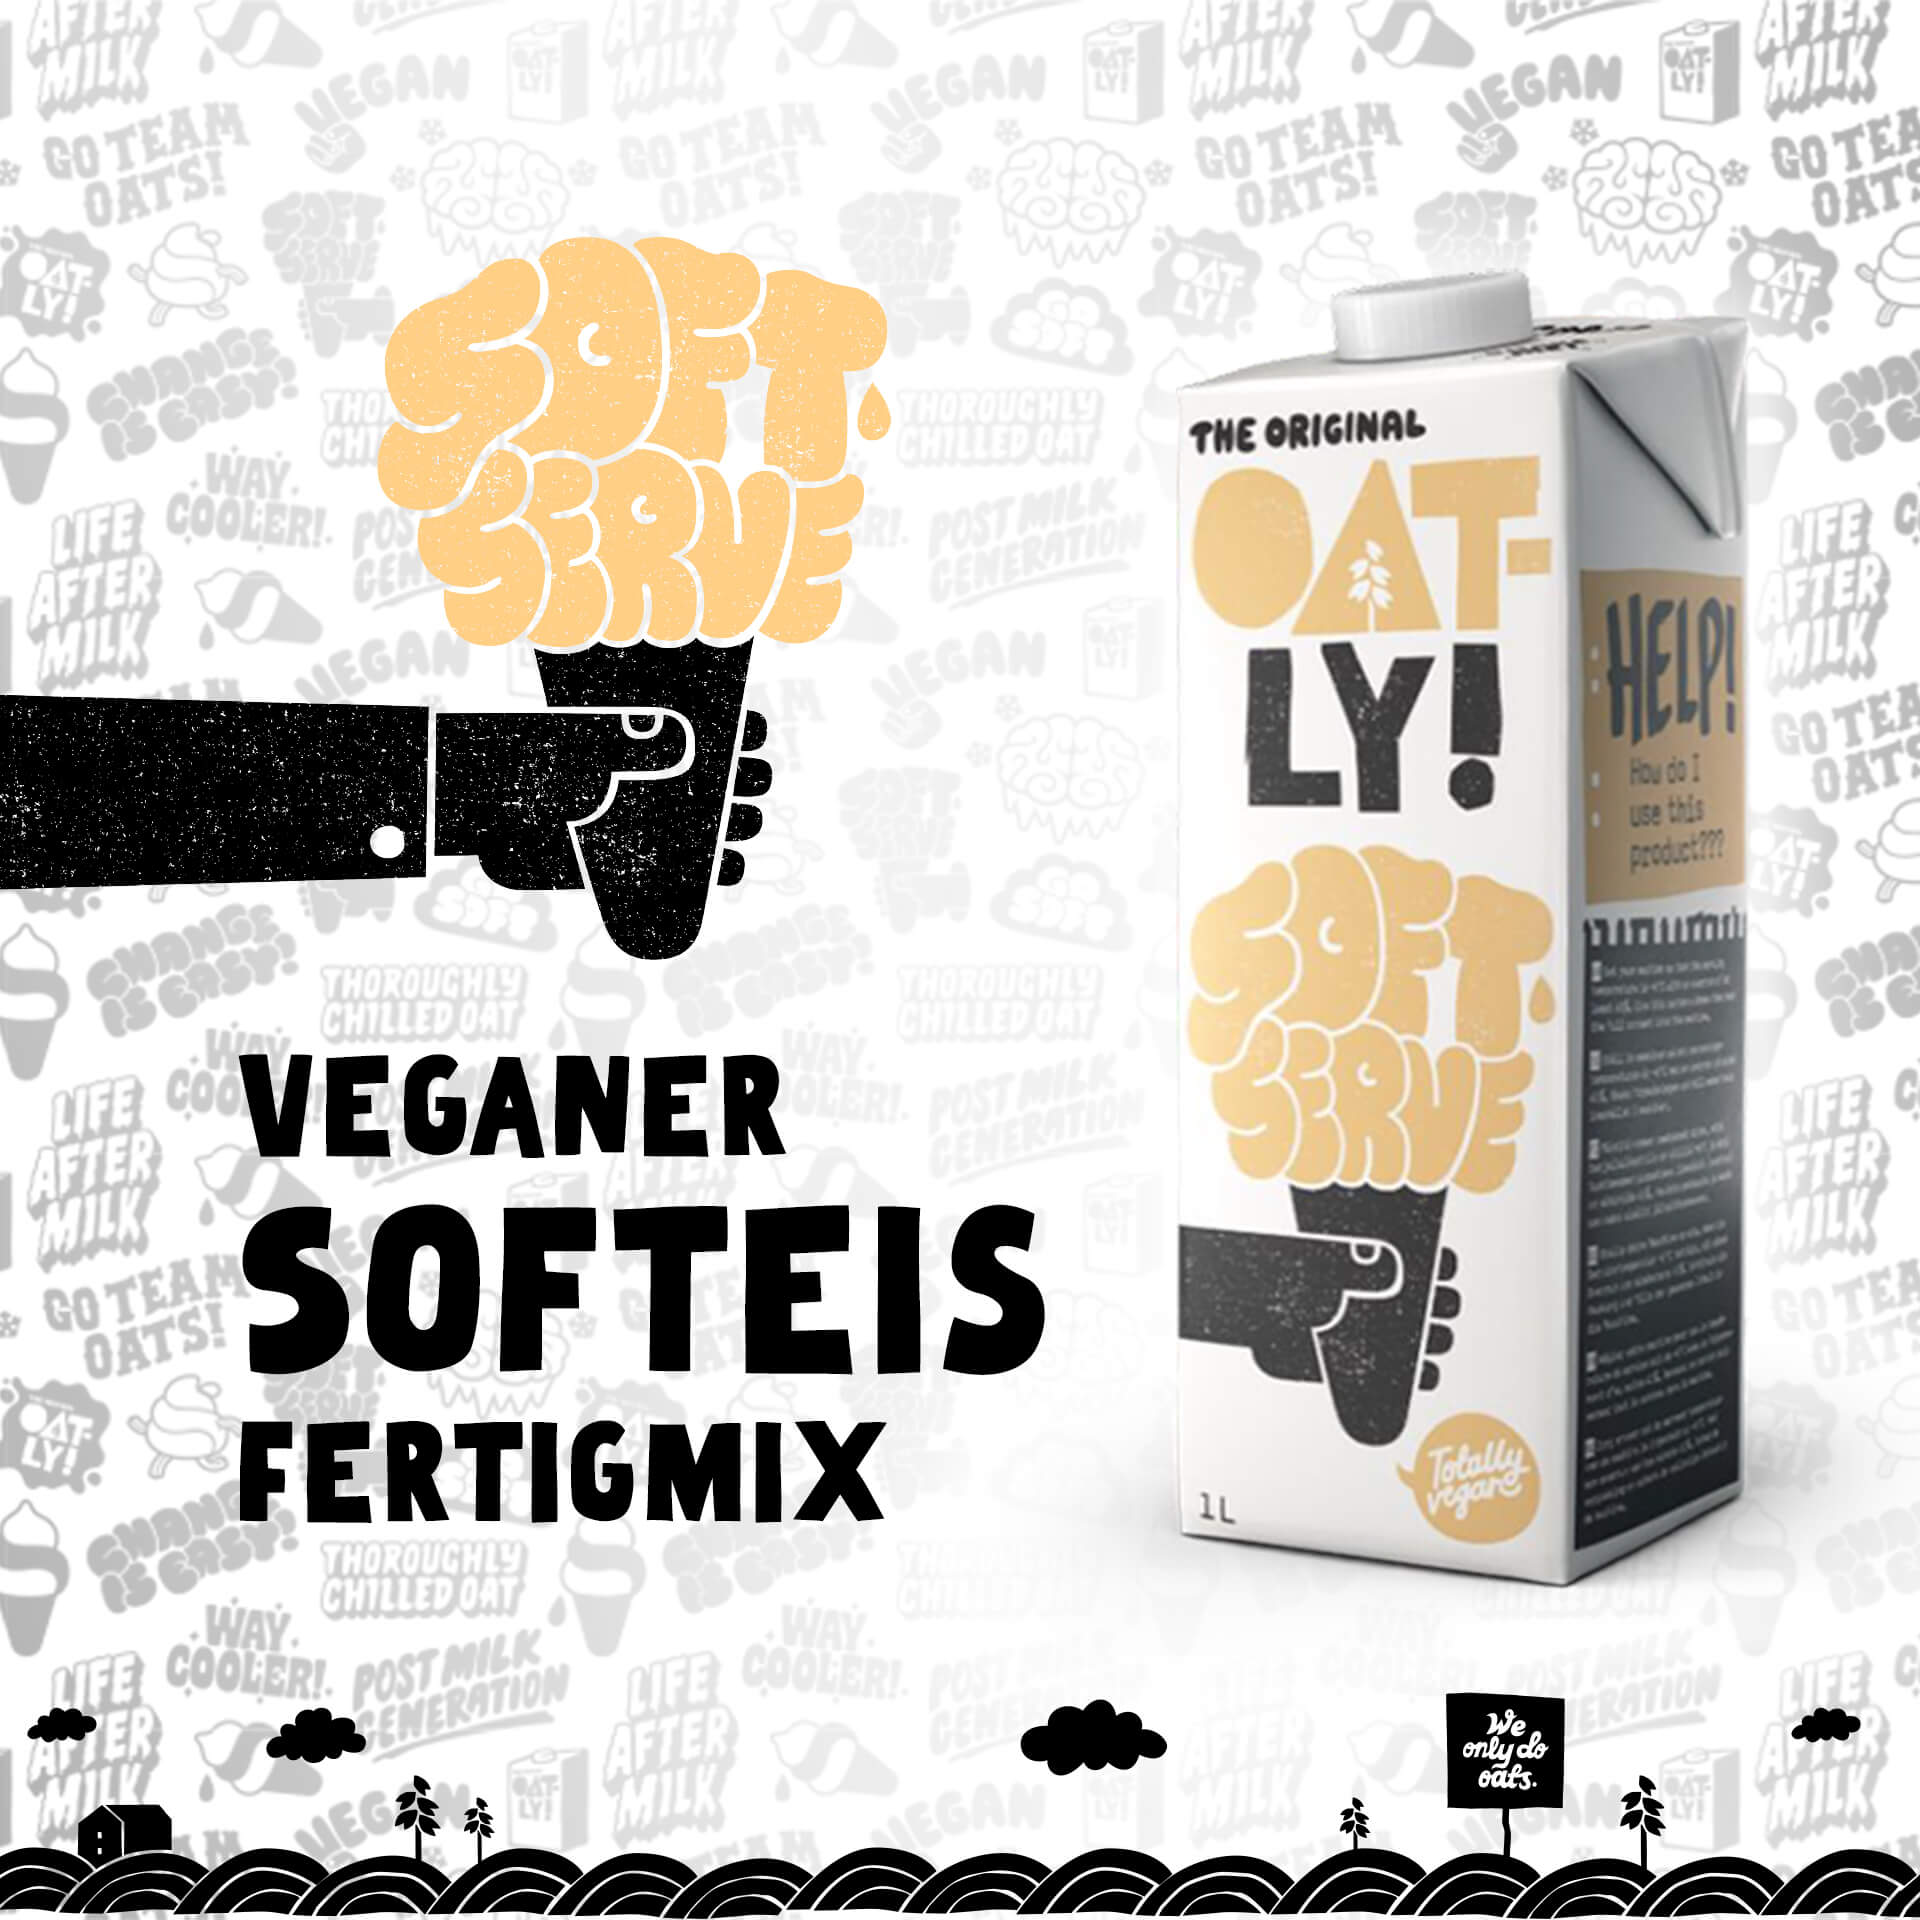 Veganer Softeis Fertigmix von Oatly